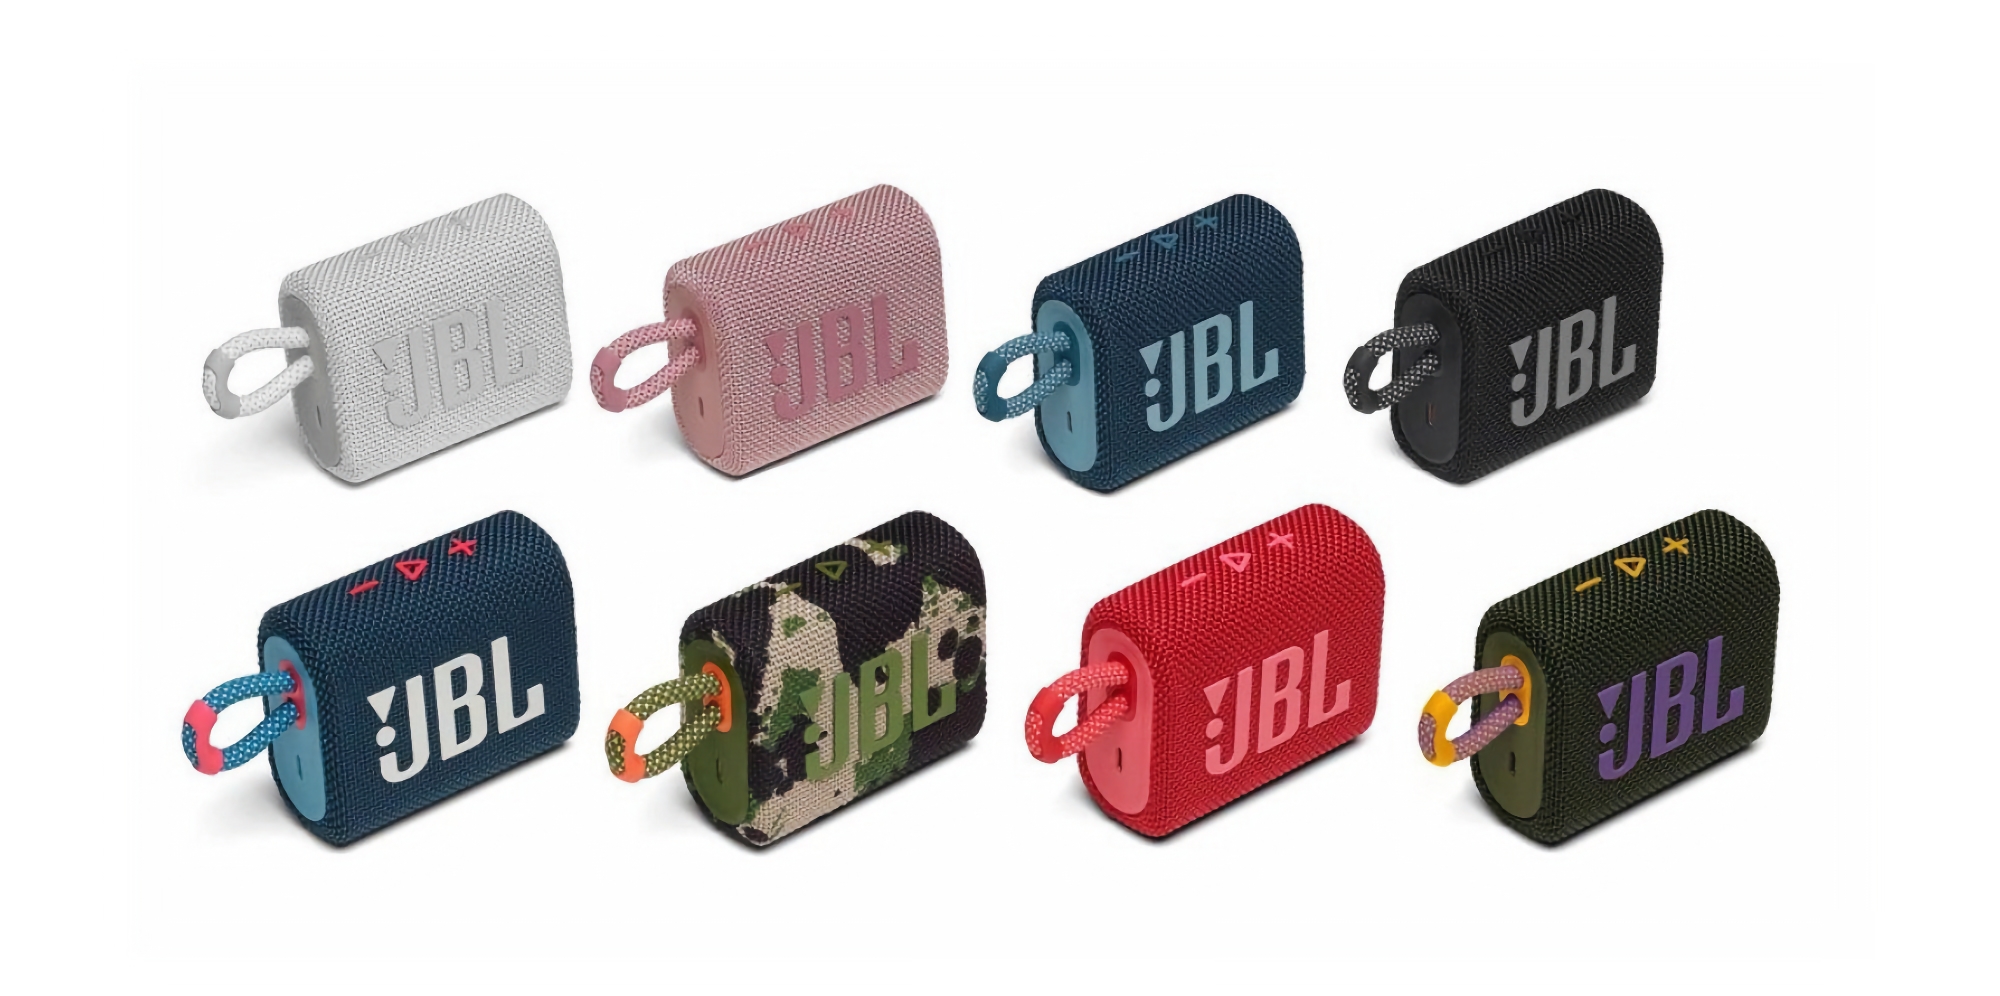 JBL Go 3 kompakter kabelloser Lautsprecher mit IP67-Schutz ist bei Amazon für $39,95 ($10 Rabatt) erhältlich